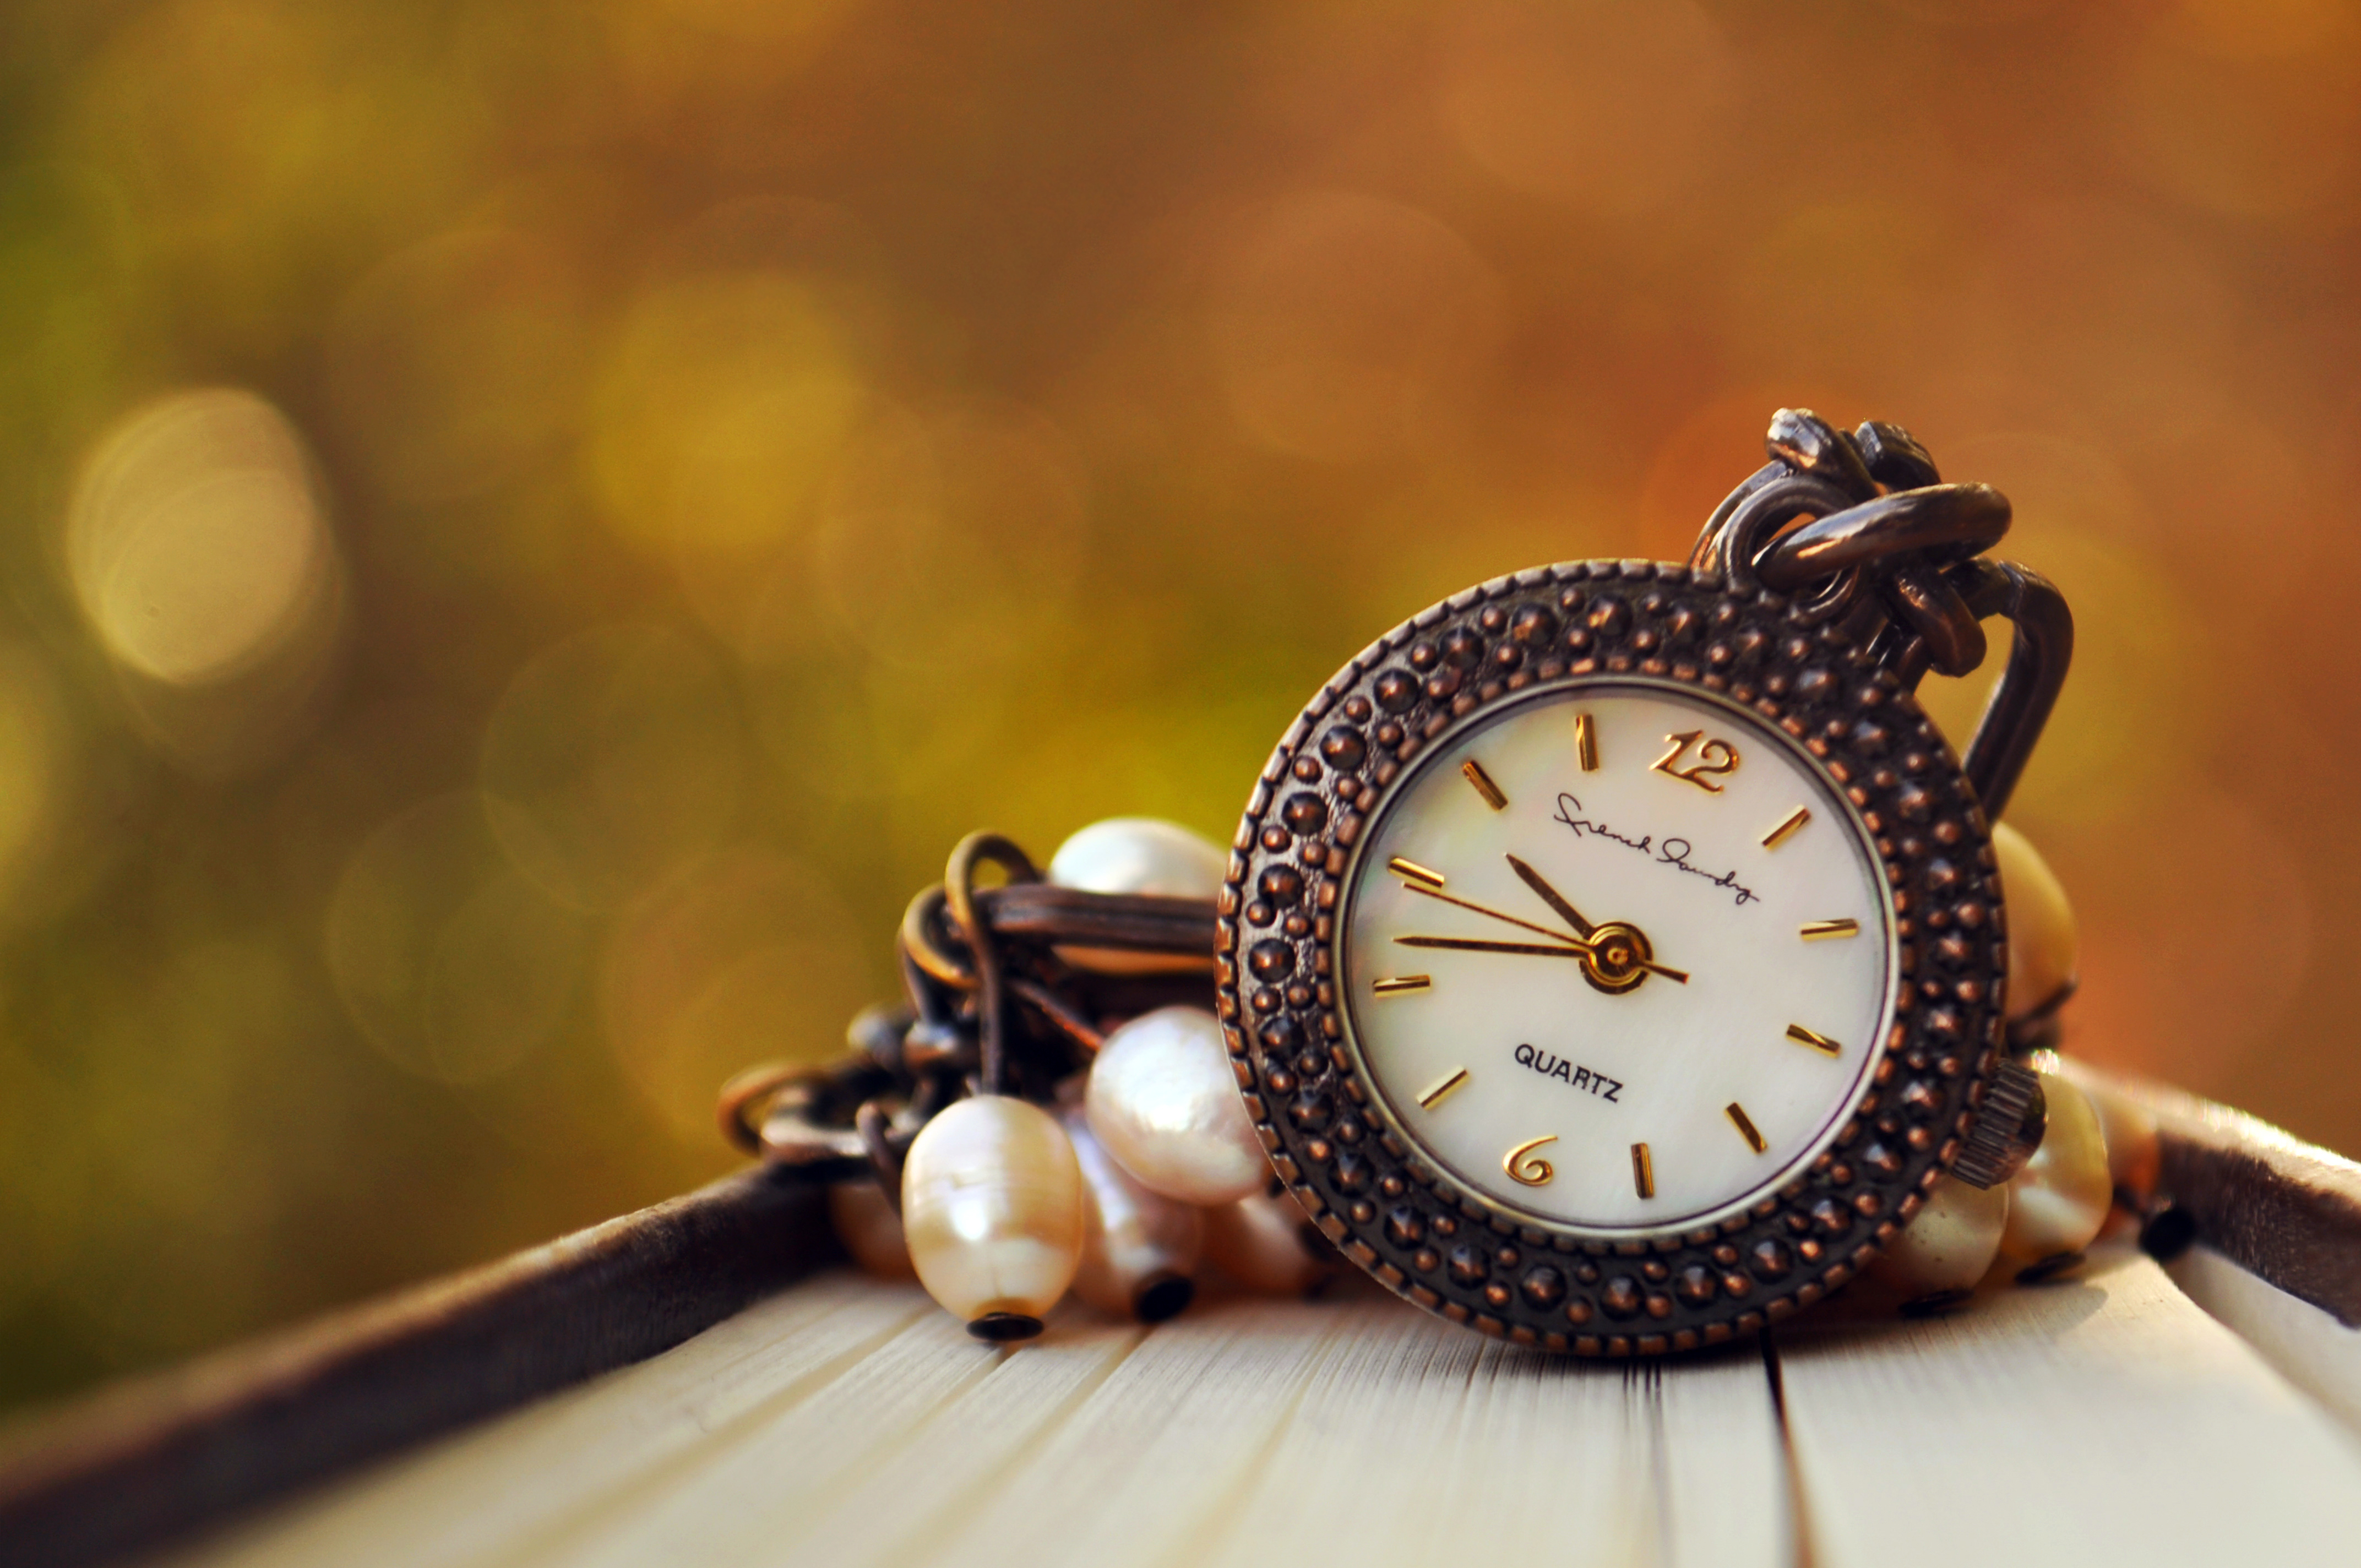 Фото обоев на часы. Красивые часы. Красивые старинные часы. Винтажные часы. Стильные обои.